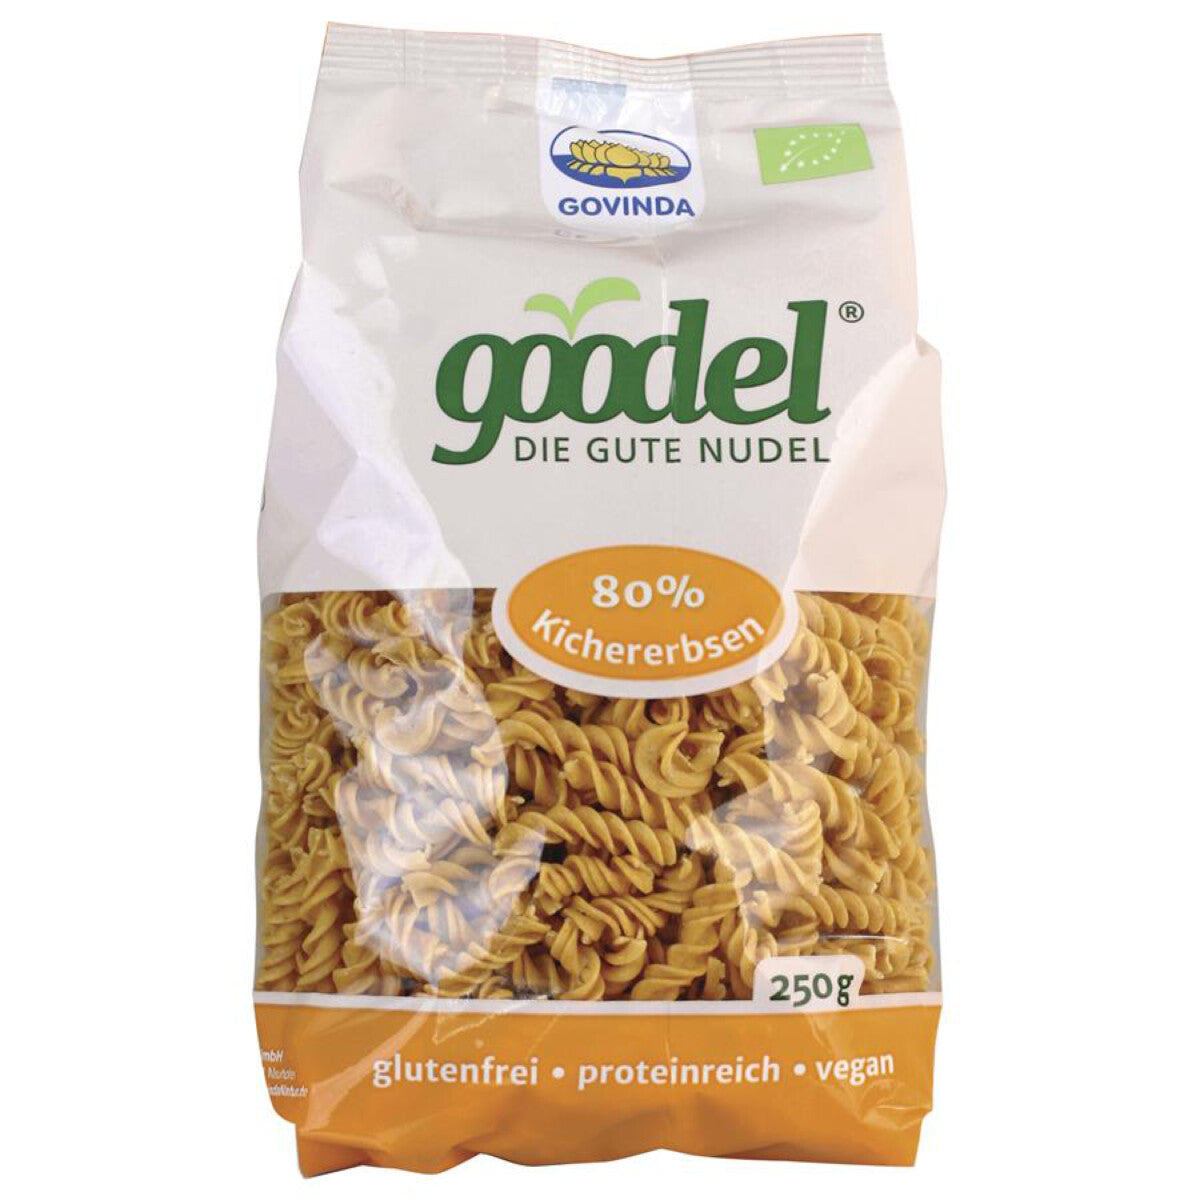 GOVINDA GOODEL Kichererbse Spirelli - 250 g